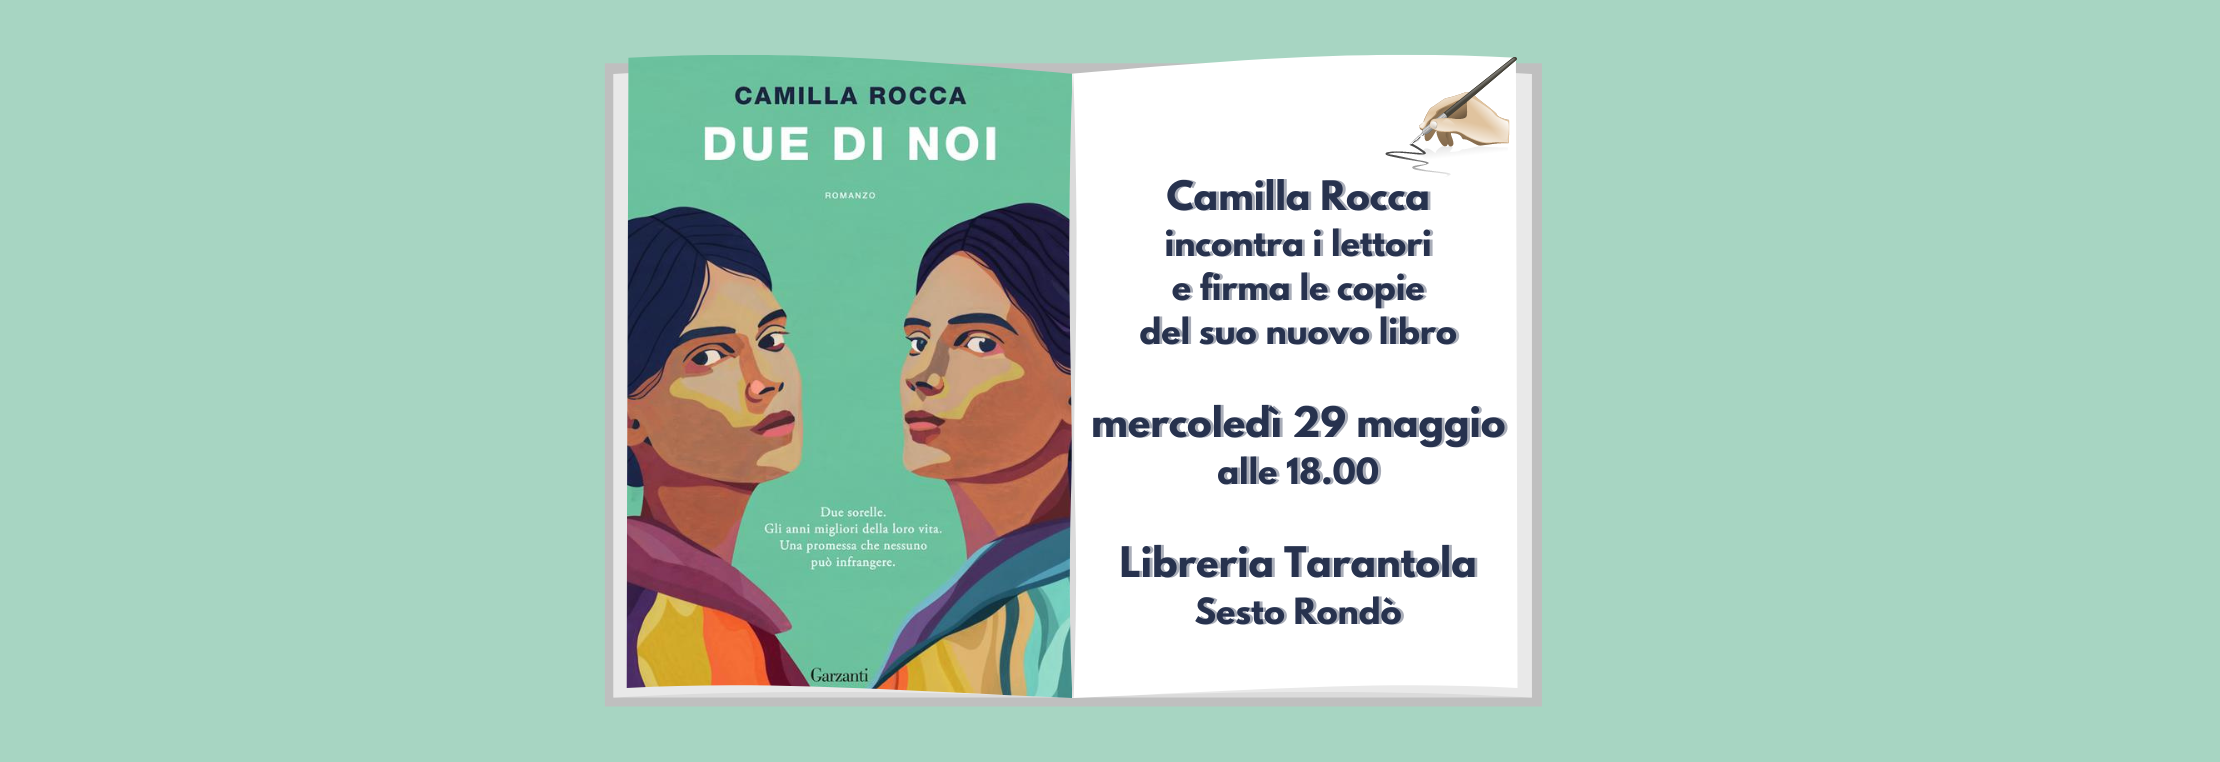 Camilla Rocca incontra i lettori alla libreria Tarantola